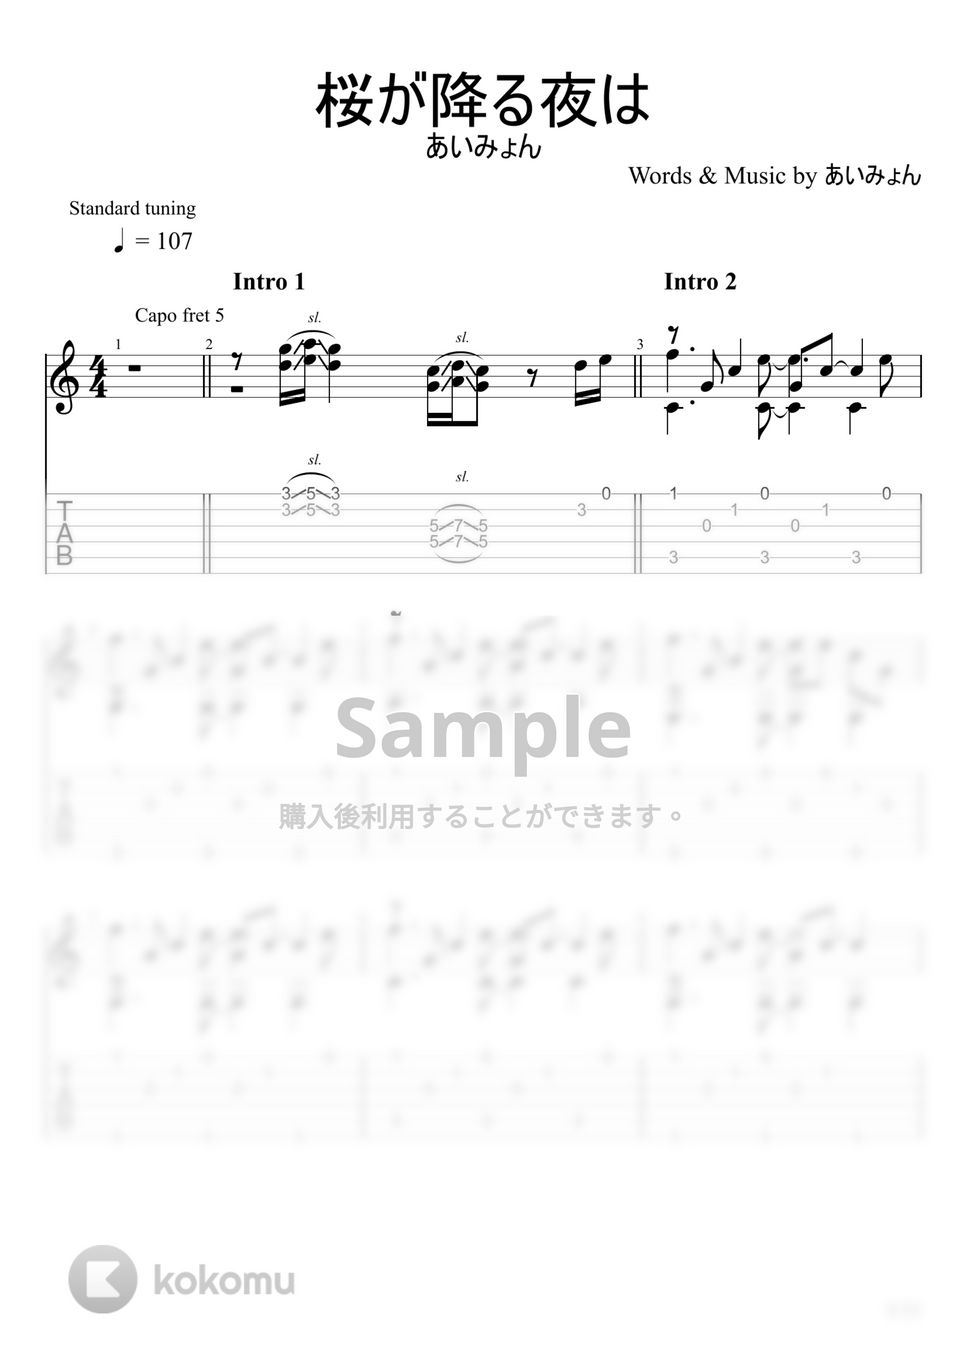 あいみょん - 桜が降る夜は (ソロギター) by u3danchou